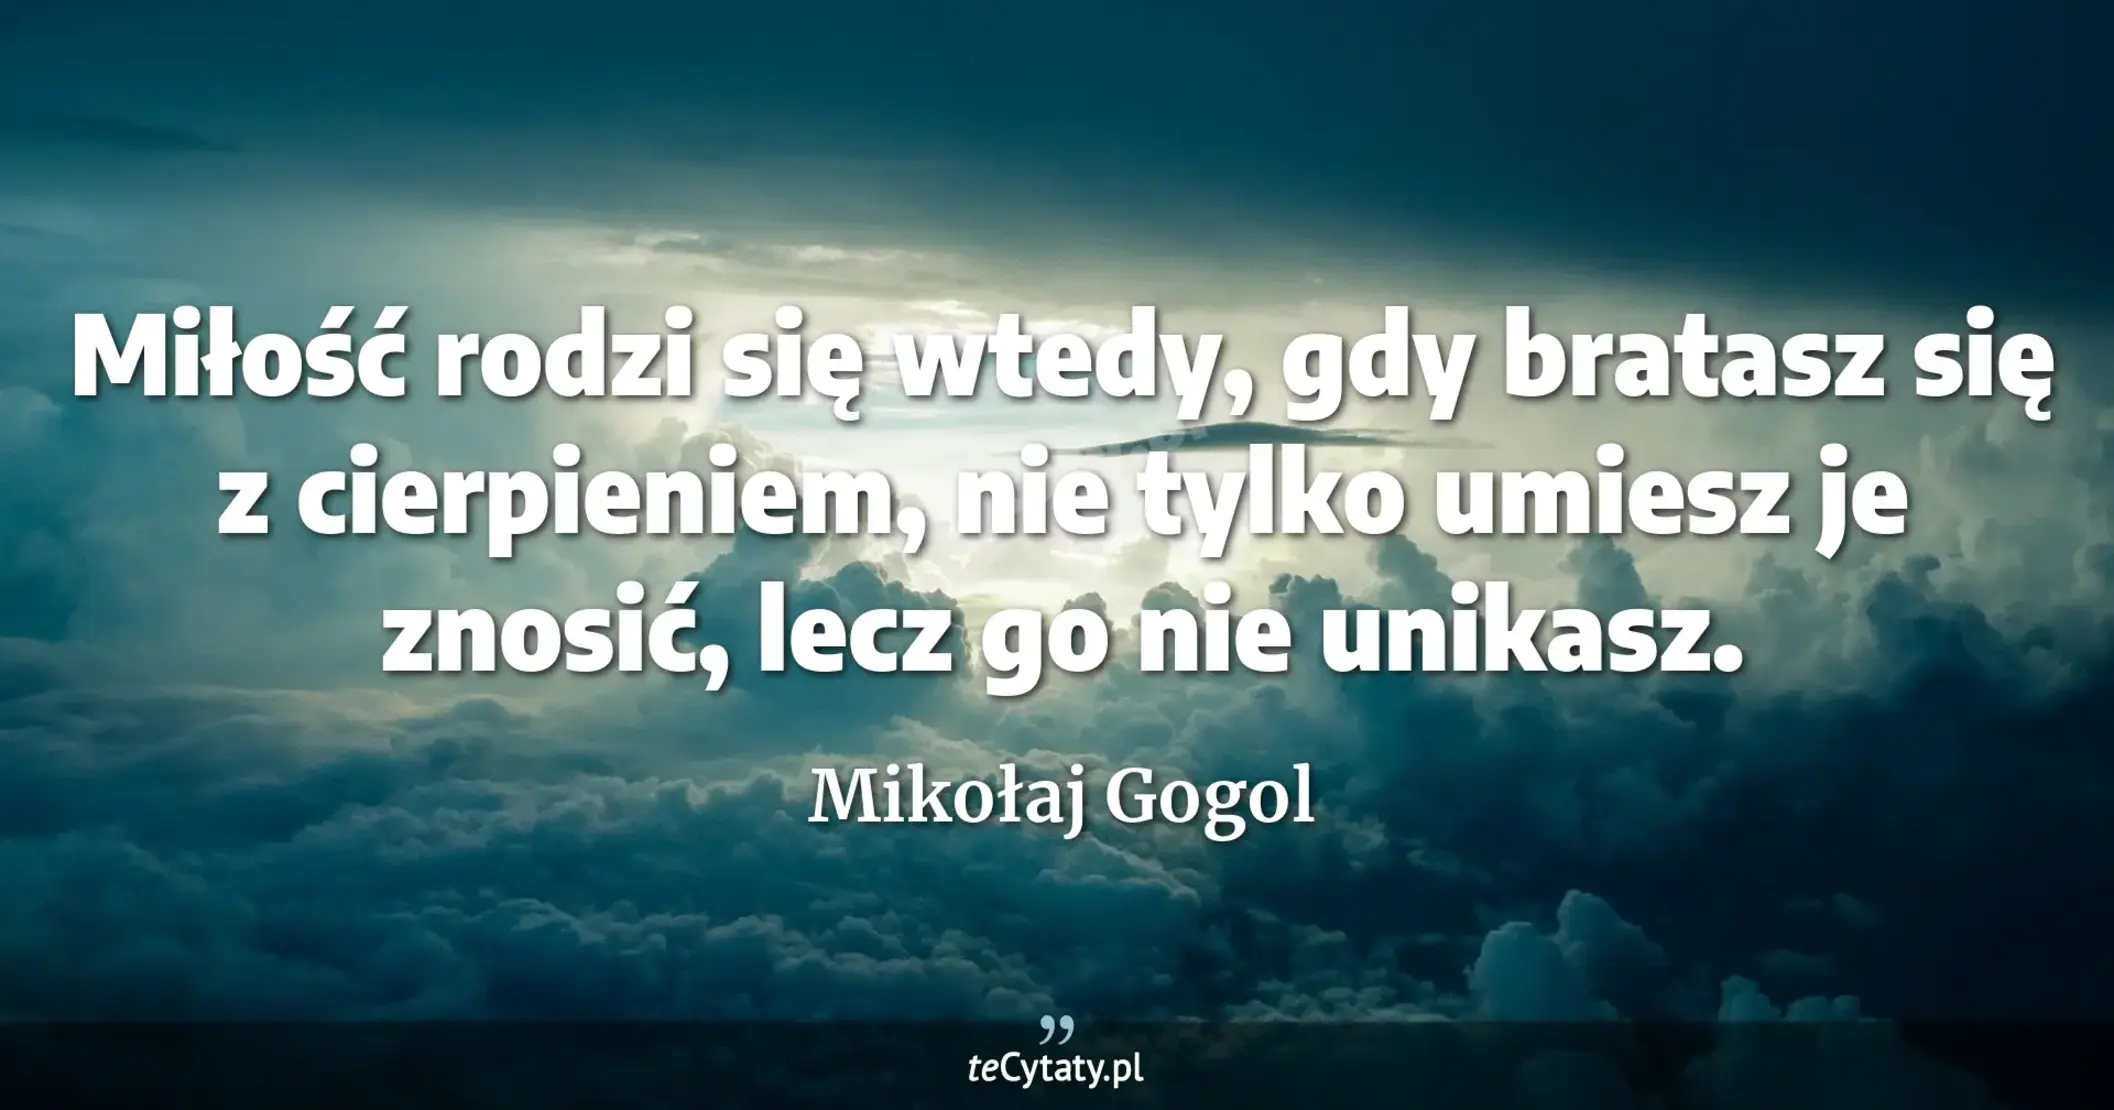 Miłość rodzi się wtedy, gdy bratasz się z cierpieniem, nie tylko umiesz je znosić, lecz go nie unikasz. - Mikołaj Gogol